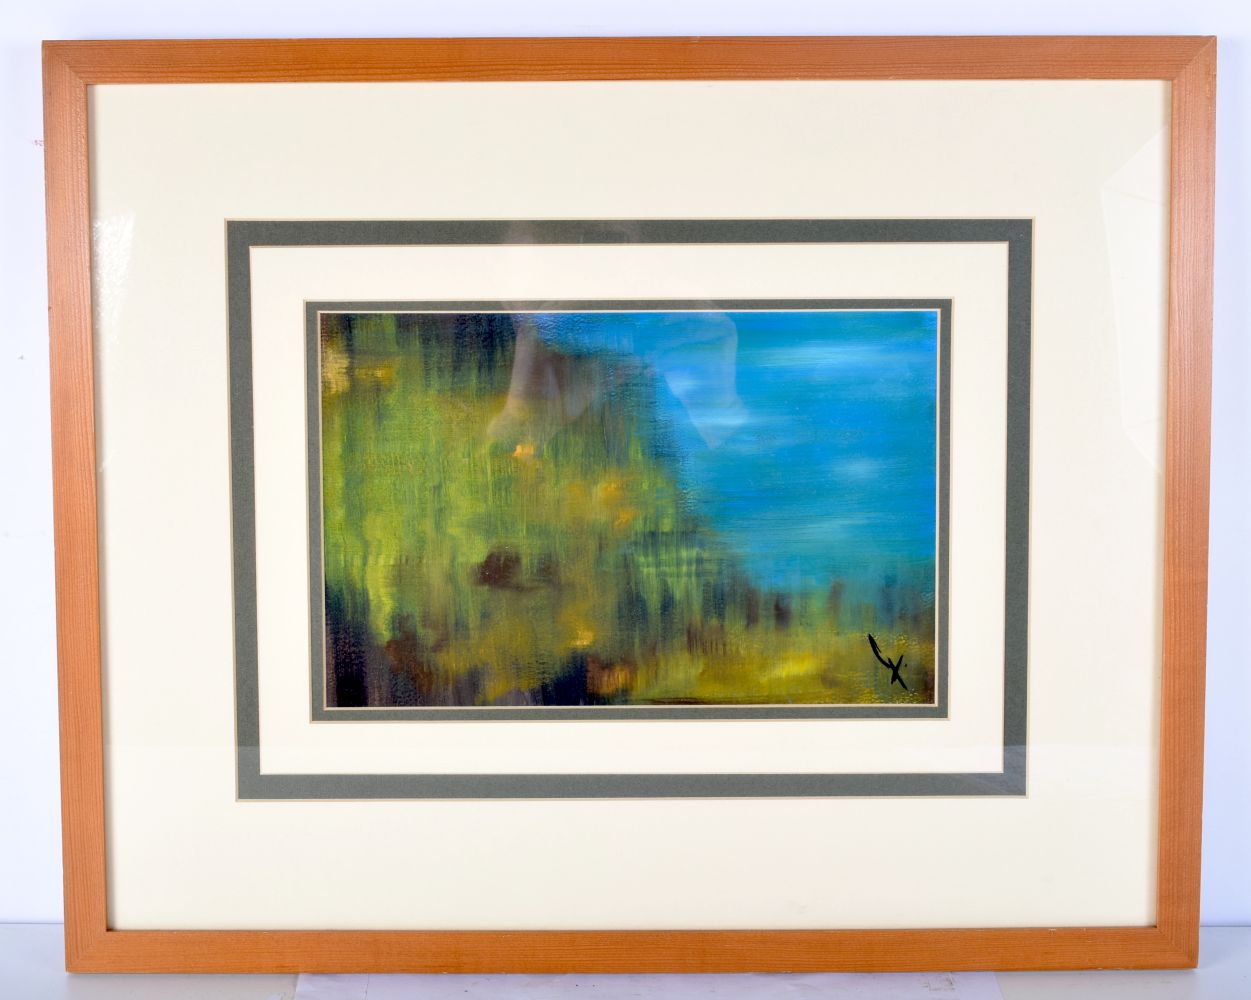 Sharon Gee framed acrylic on canvas entitled "Deep" 19 x 30 cm .